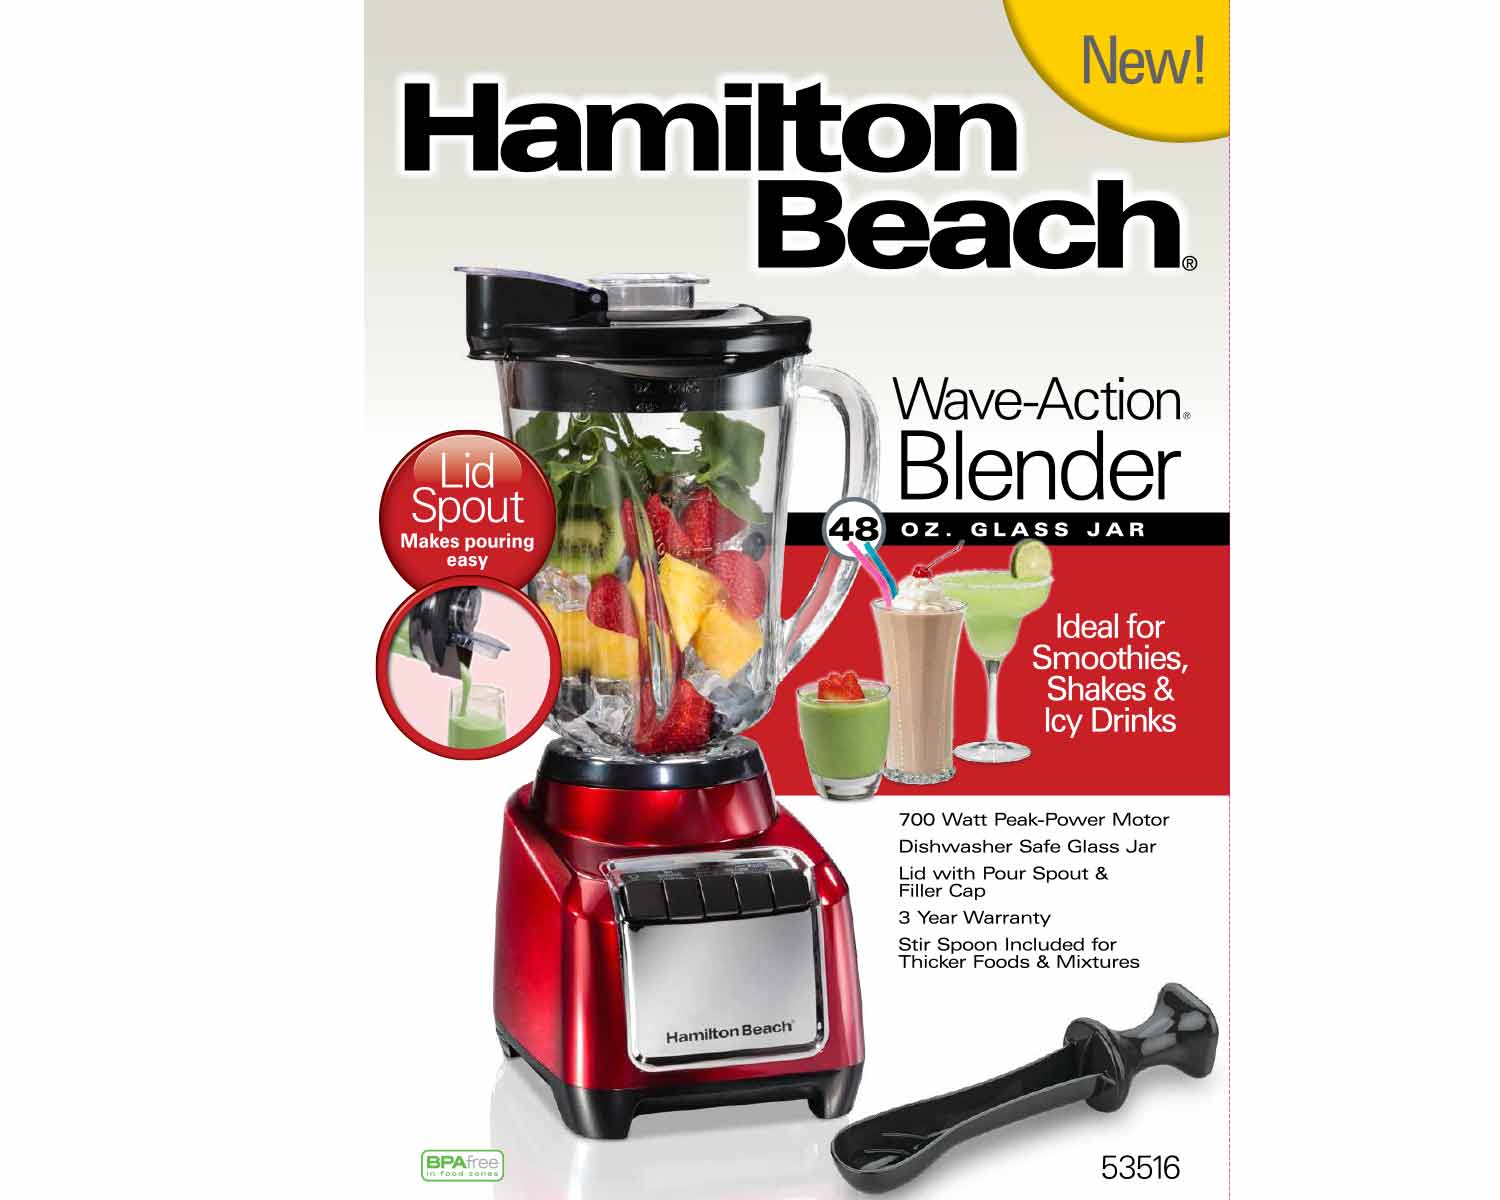 Hamilton Beach Appliance Review